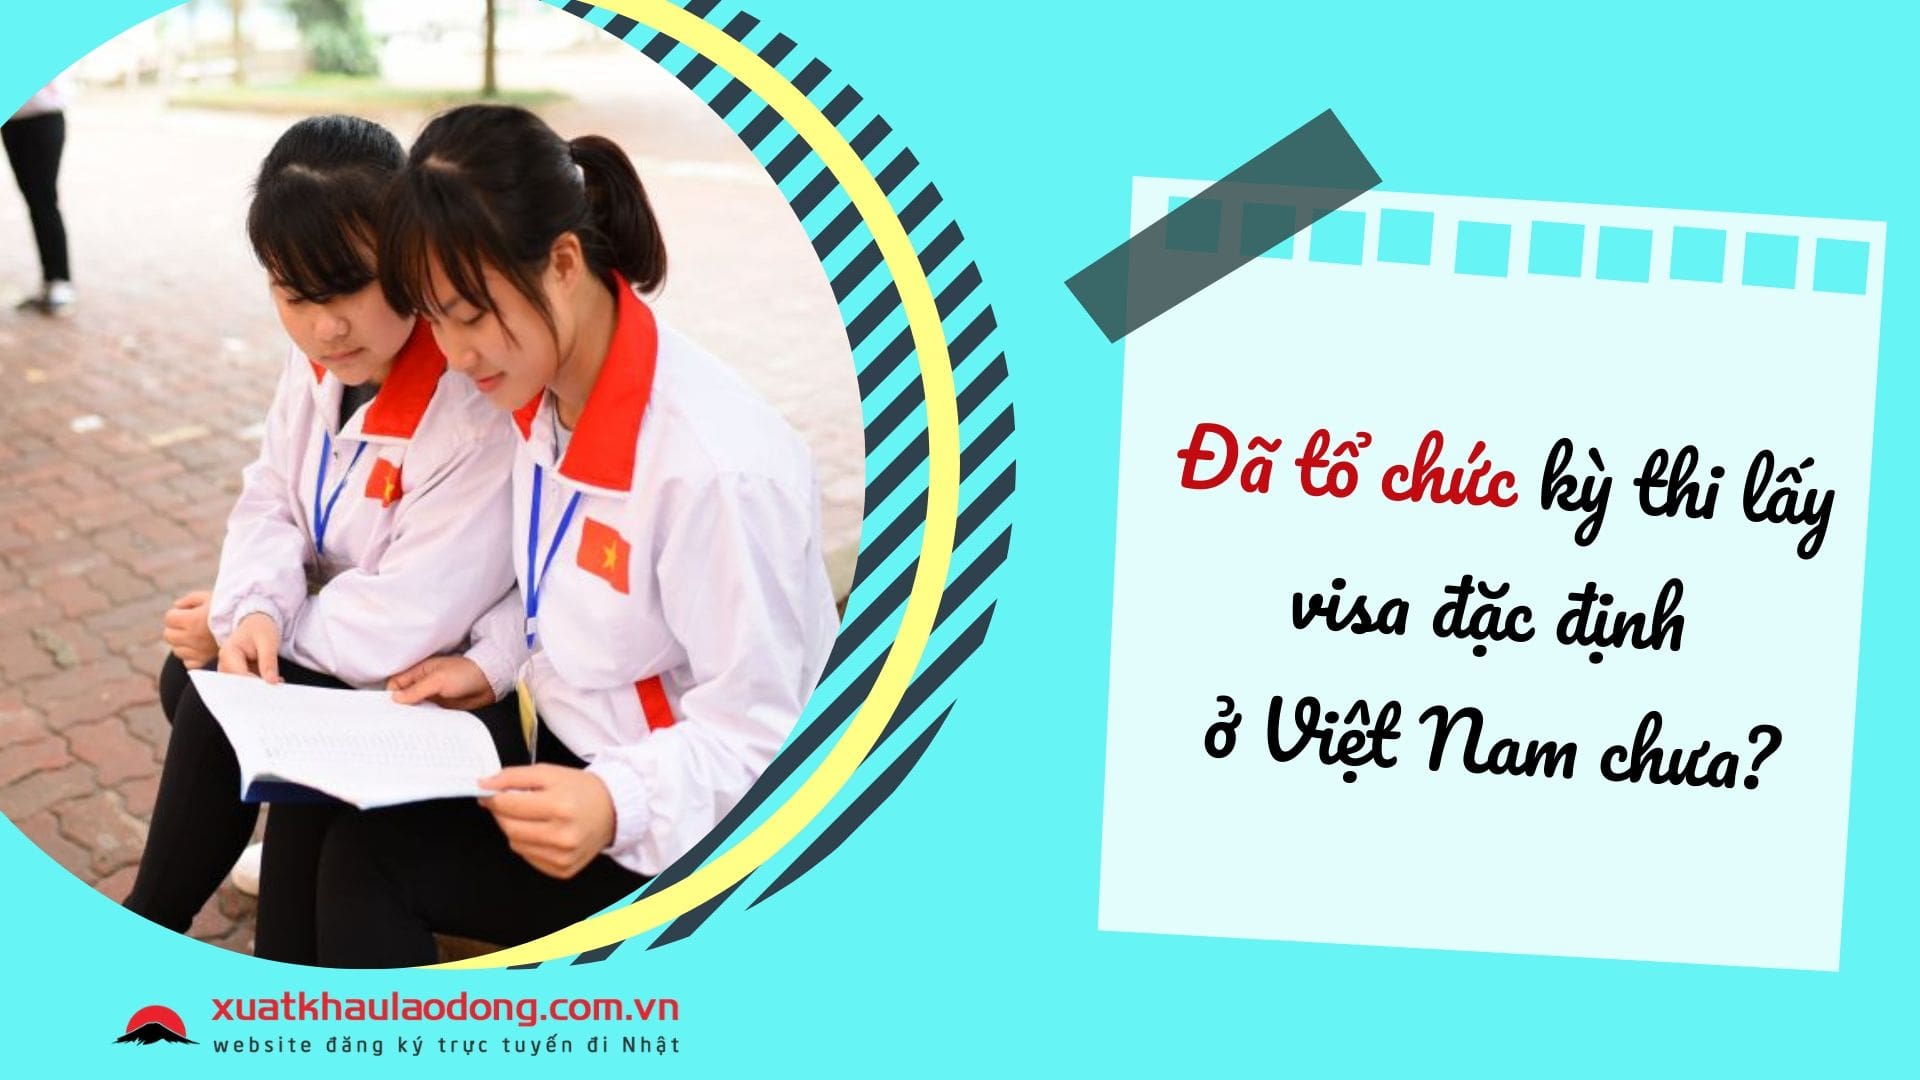 Khi nào tổ chức kỳ thi lấy visa đặc định ở Việt Nam? Đăng ký như thế nào?